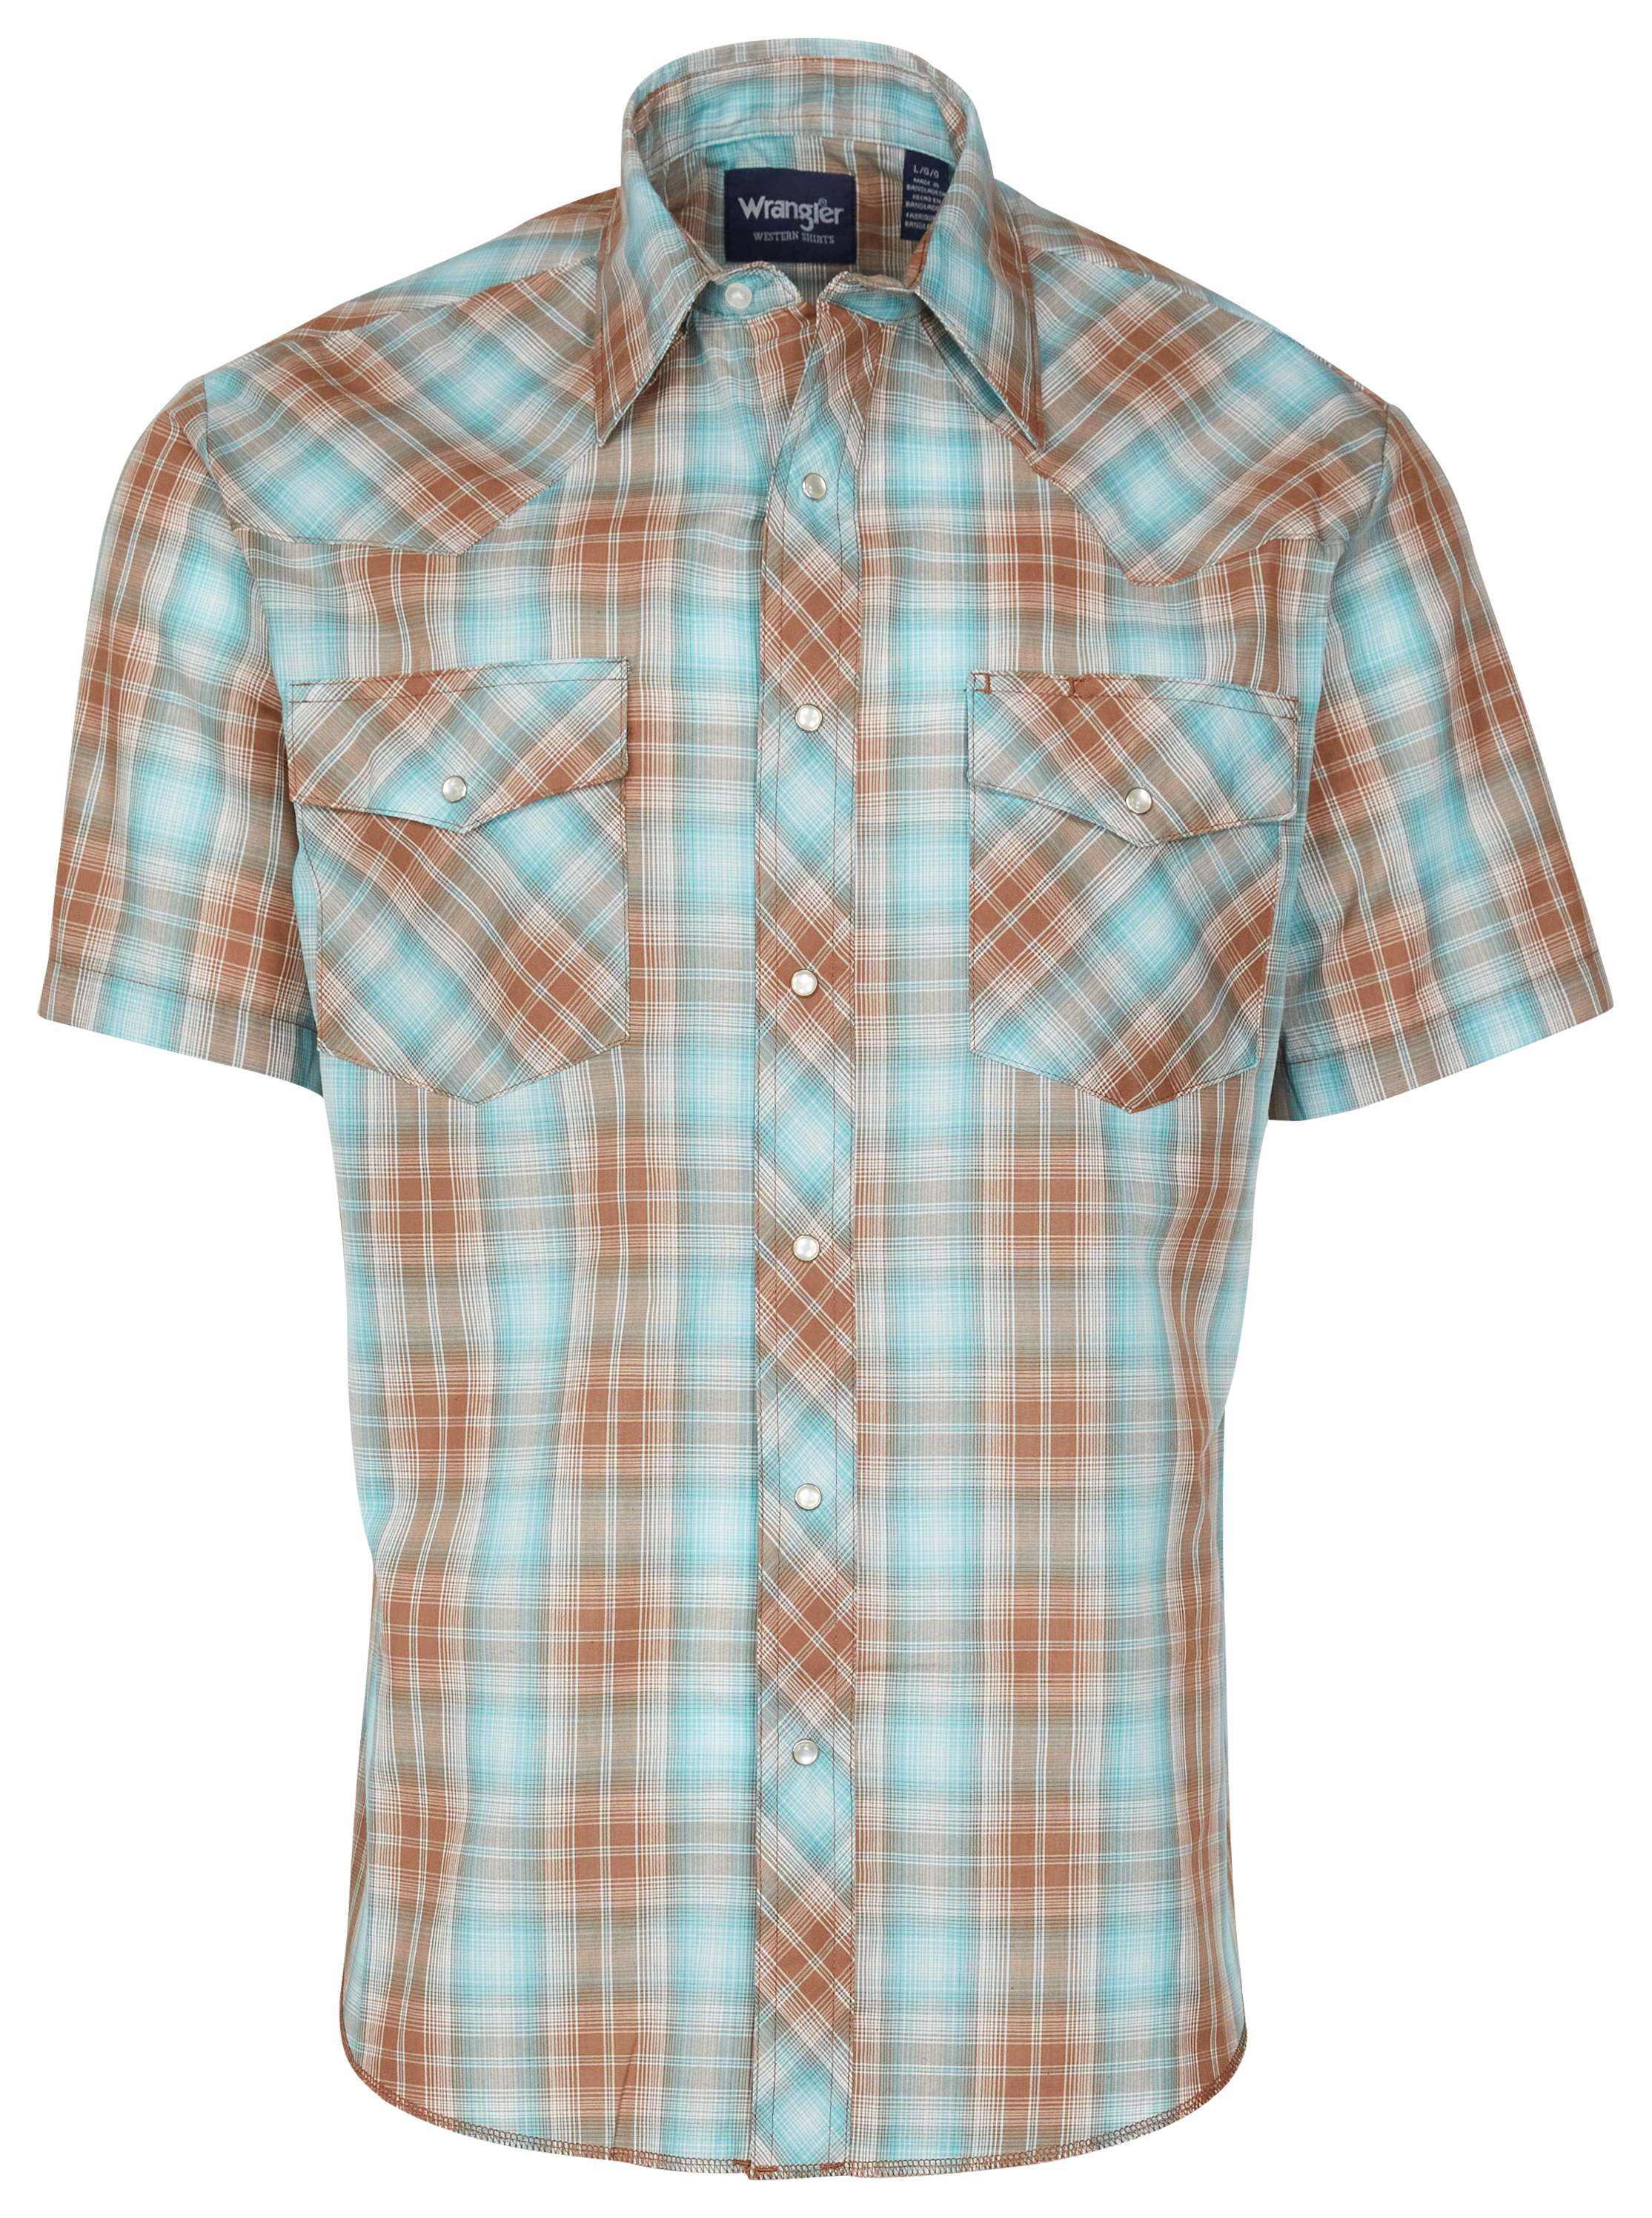 Wrangler Western Plaid Short-Sleeve Snap-Down Shirt for Men